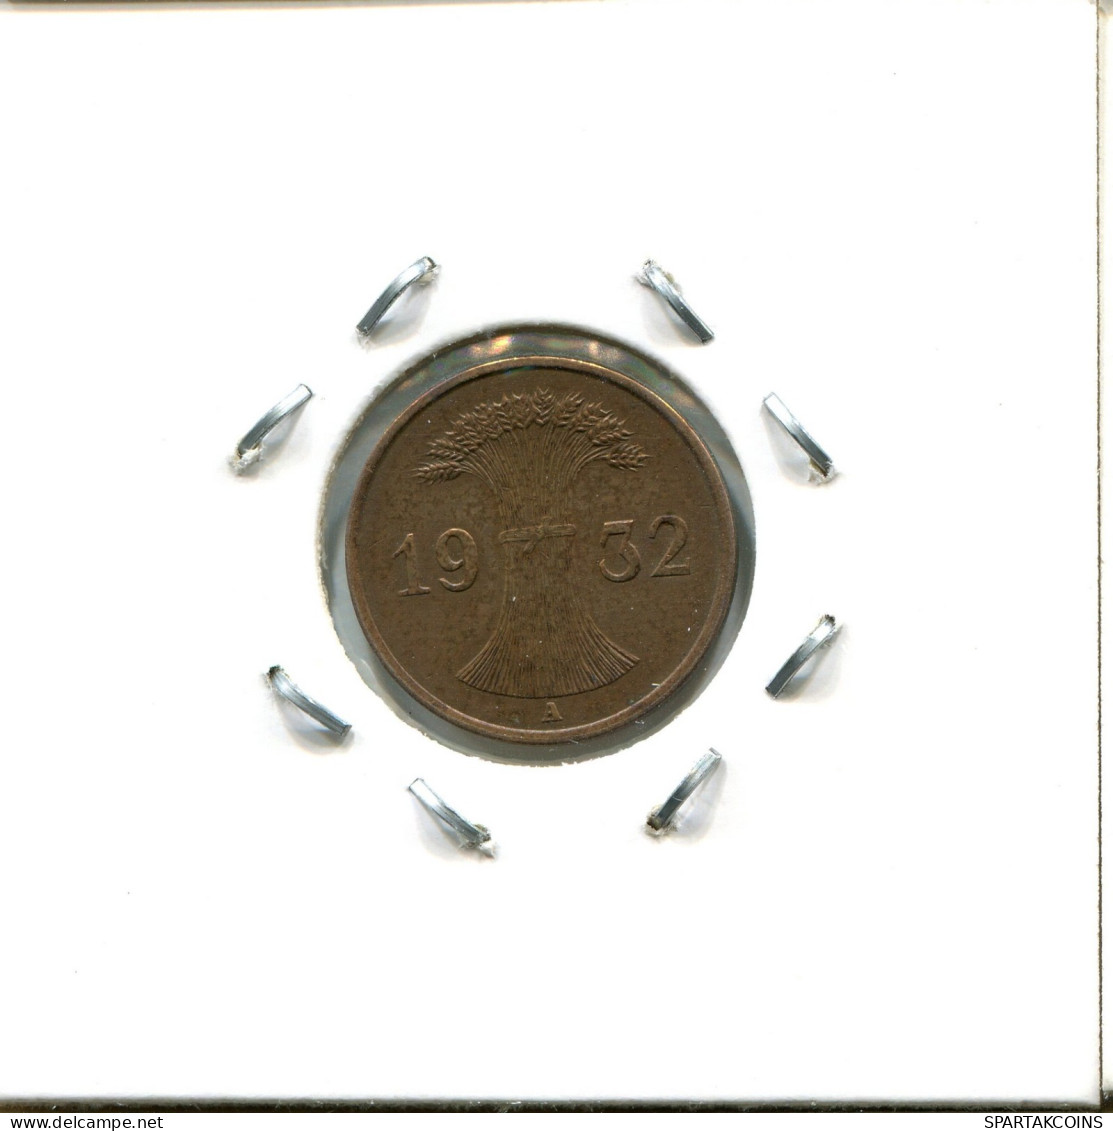 1 RENTENPFENNIG 1932 A ALEMANIA Moneda GERMANY #DA460.2.E.A - 1 Rentenpfennig & 1 Reichspfennig